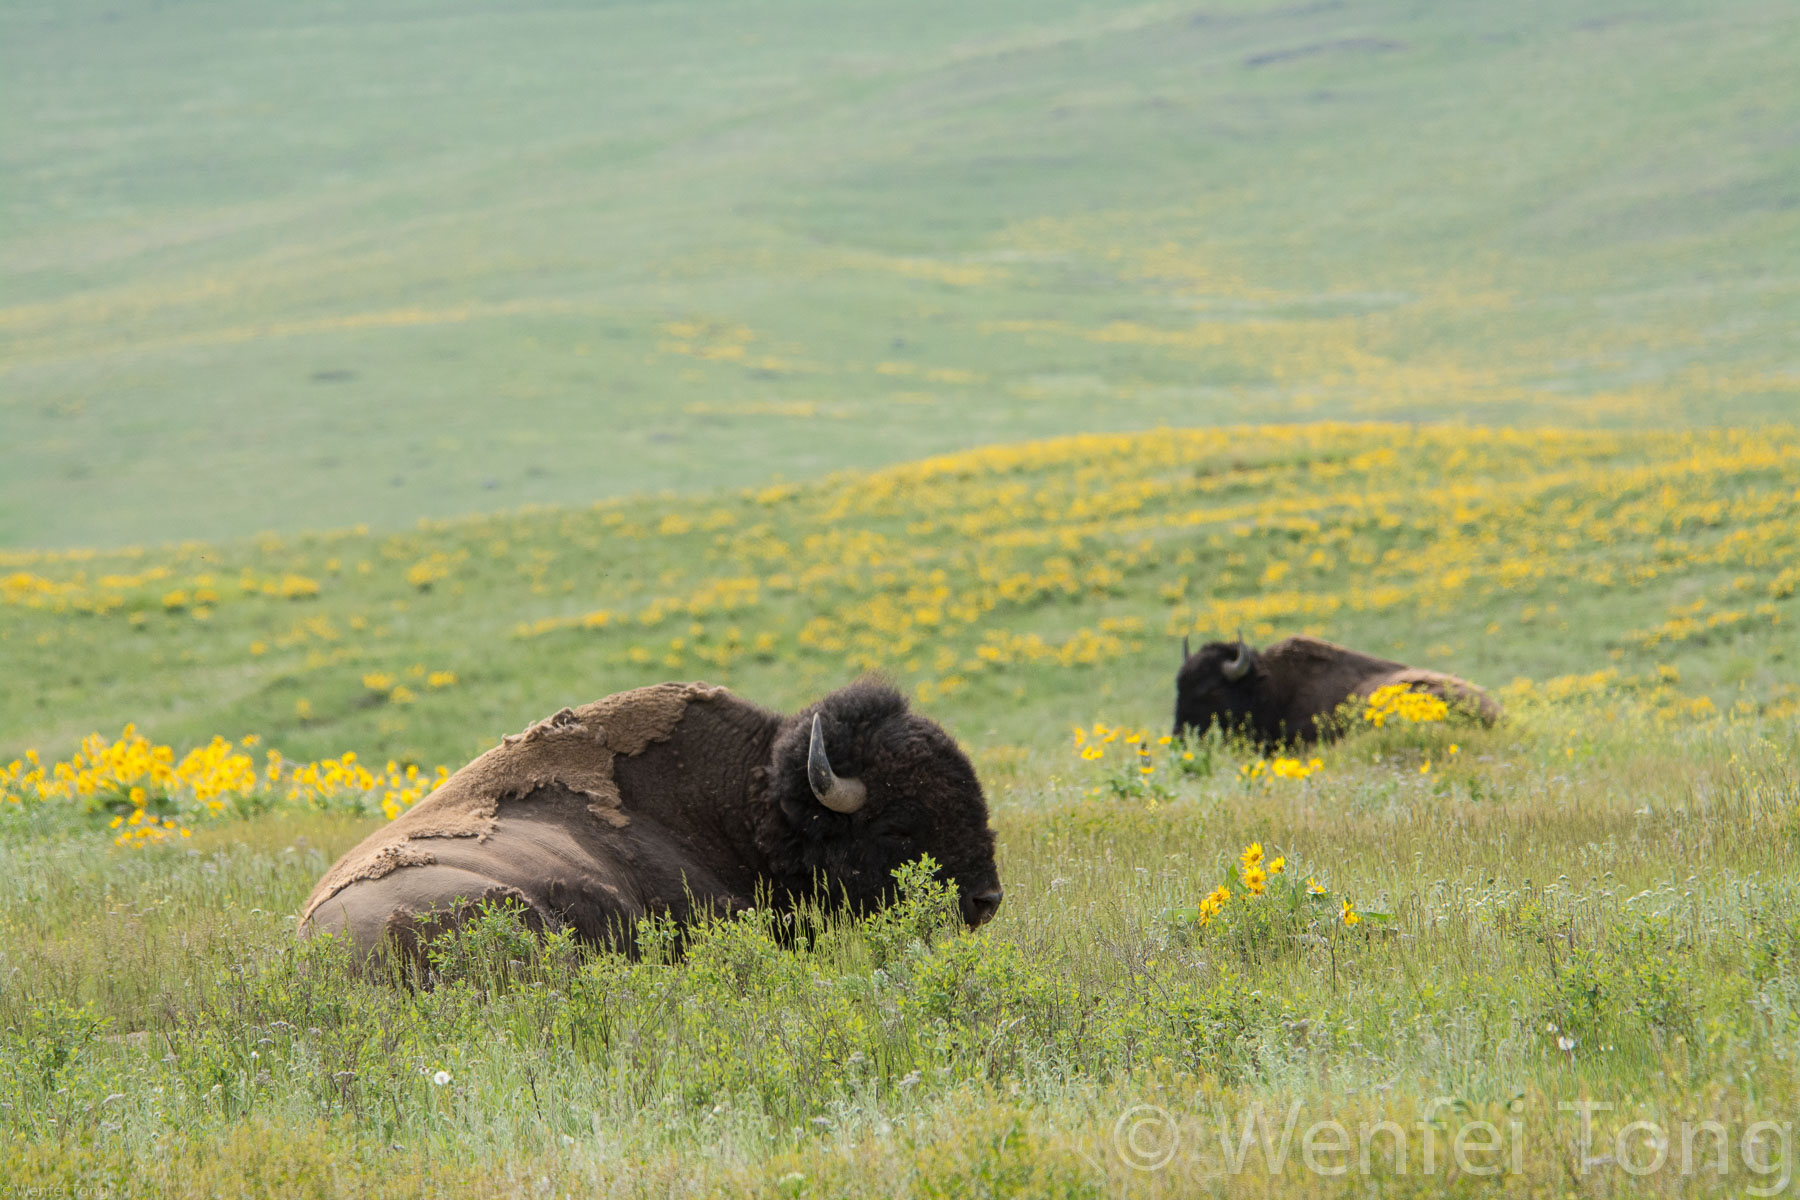 Sleepy bison bulls lying in a bed of arrowleaf balsamroot